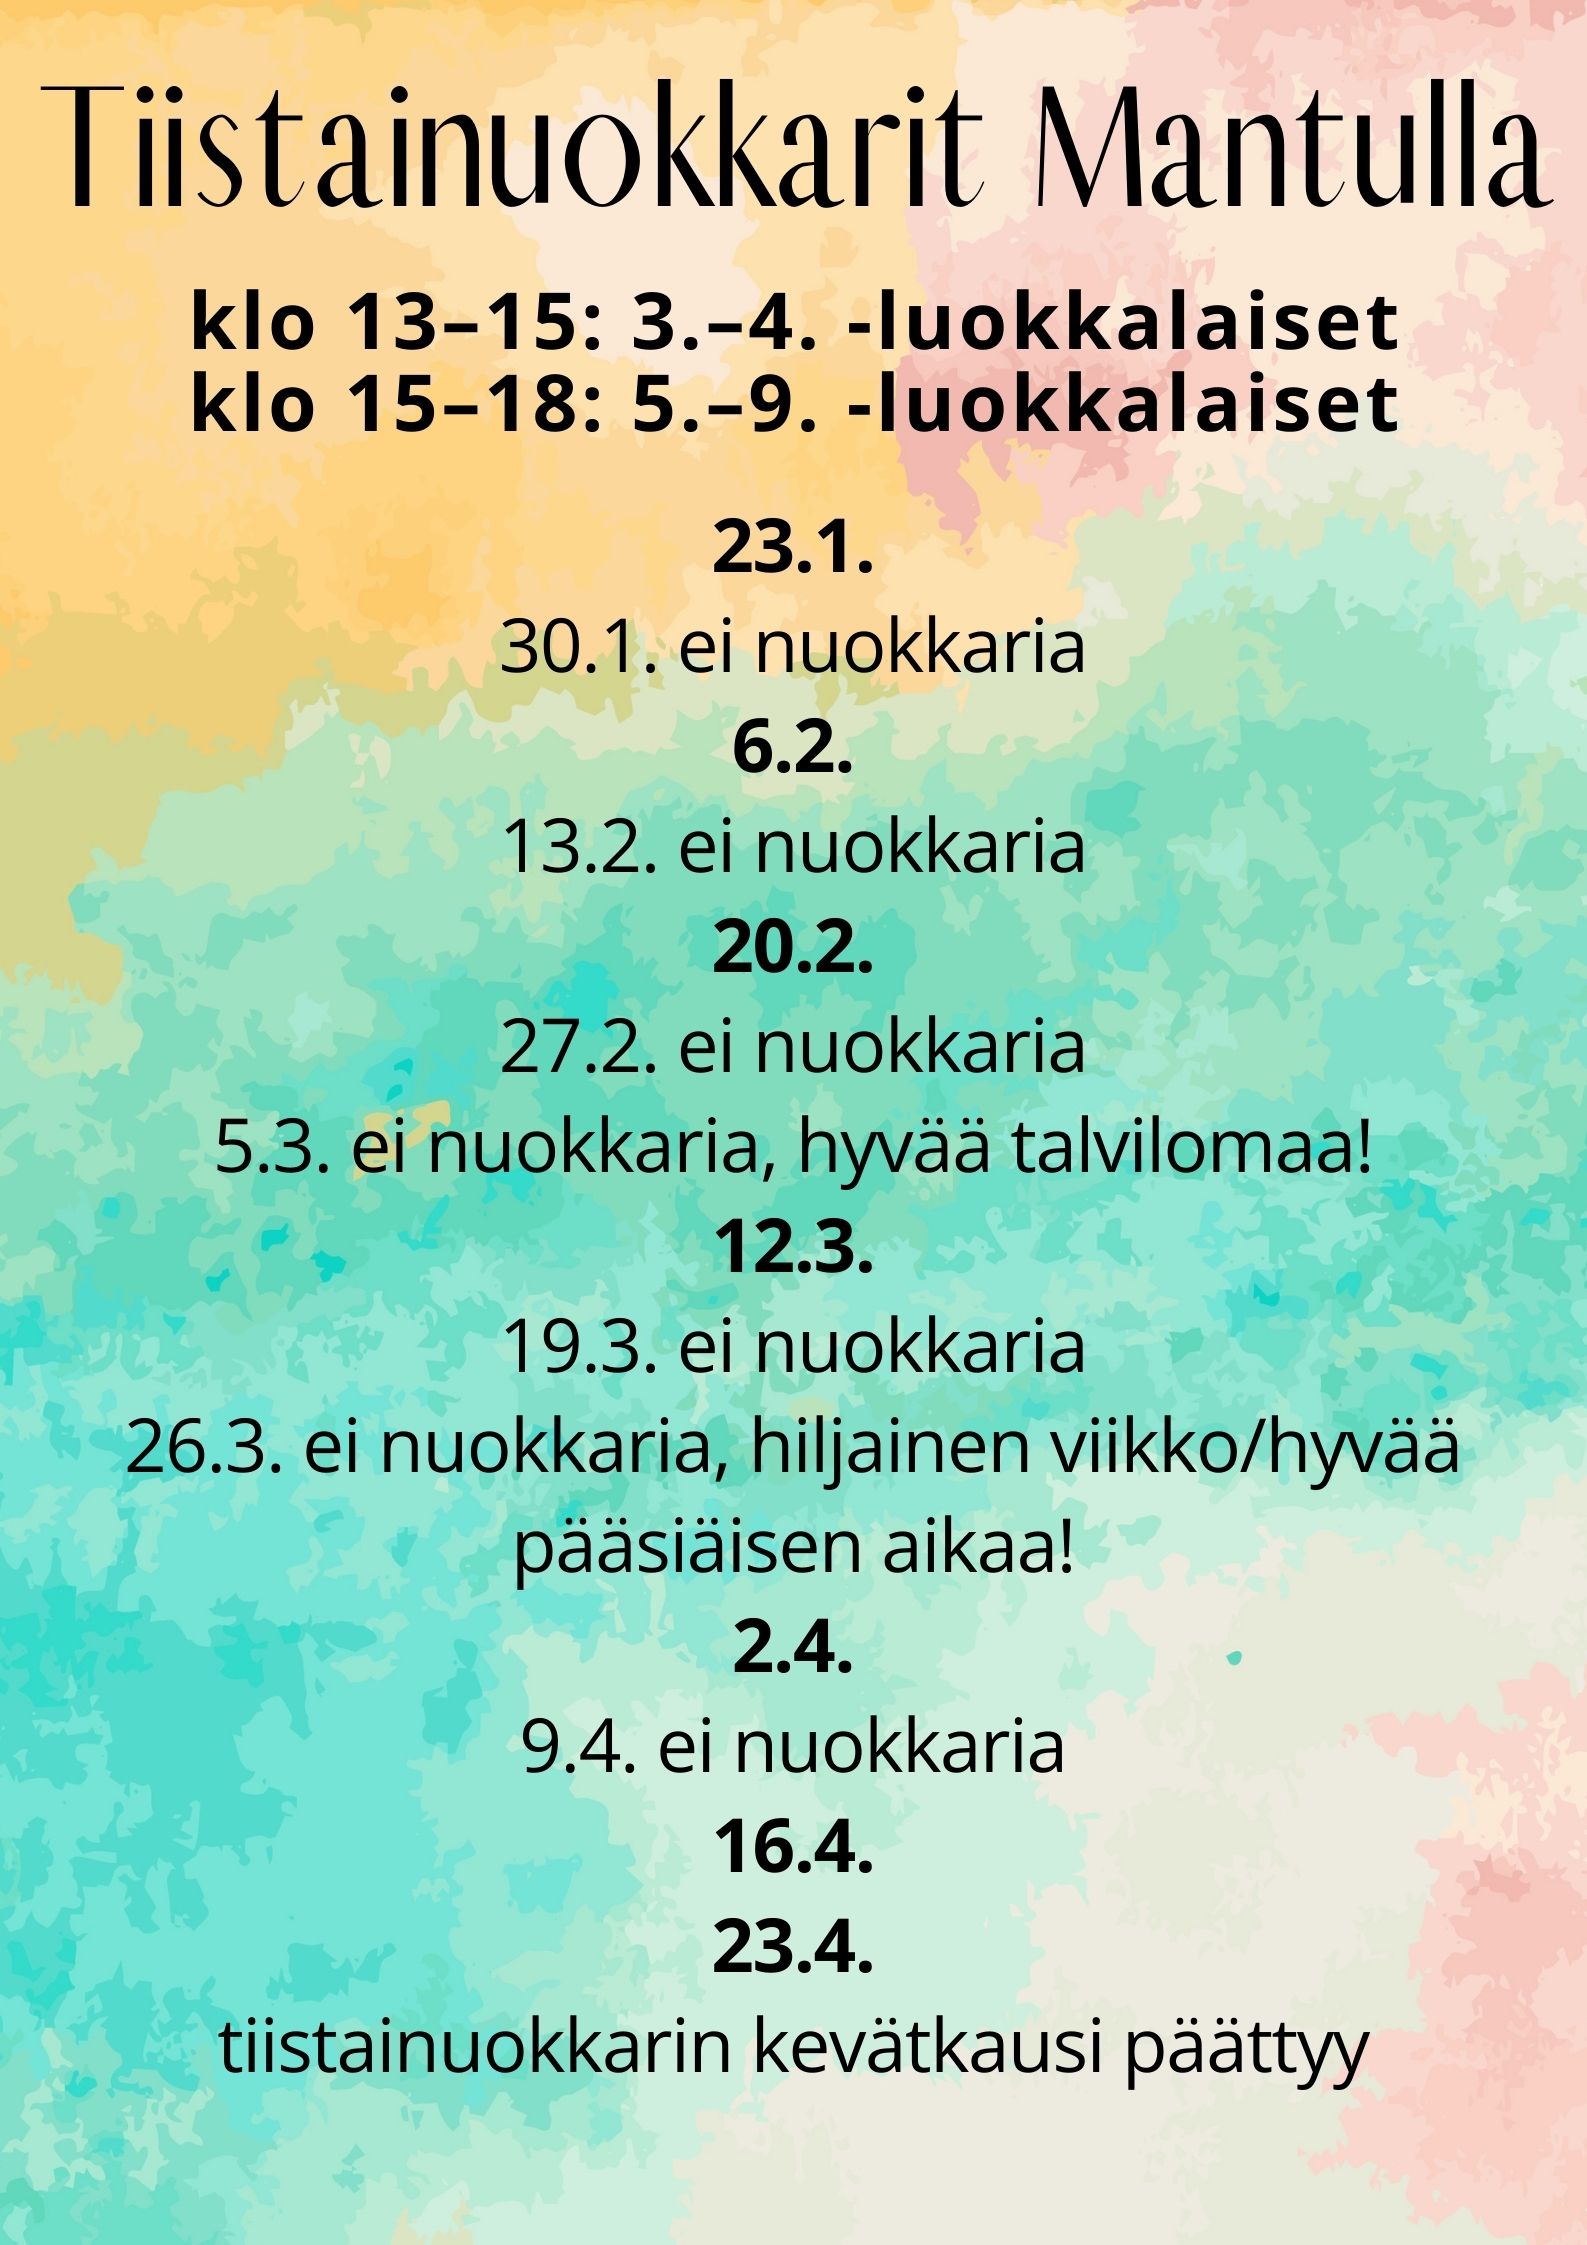 Tiistainuokkarit Tervossa Mantulla klo 13-15 3.-4.-luokkalaiset, klo 15-18 5.-9.-luokkalaiset. ti 23.1. noin joka toinen viikko.